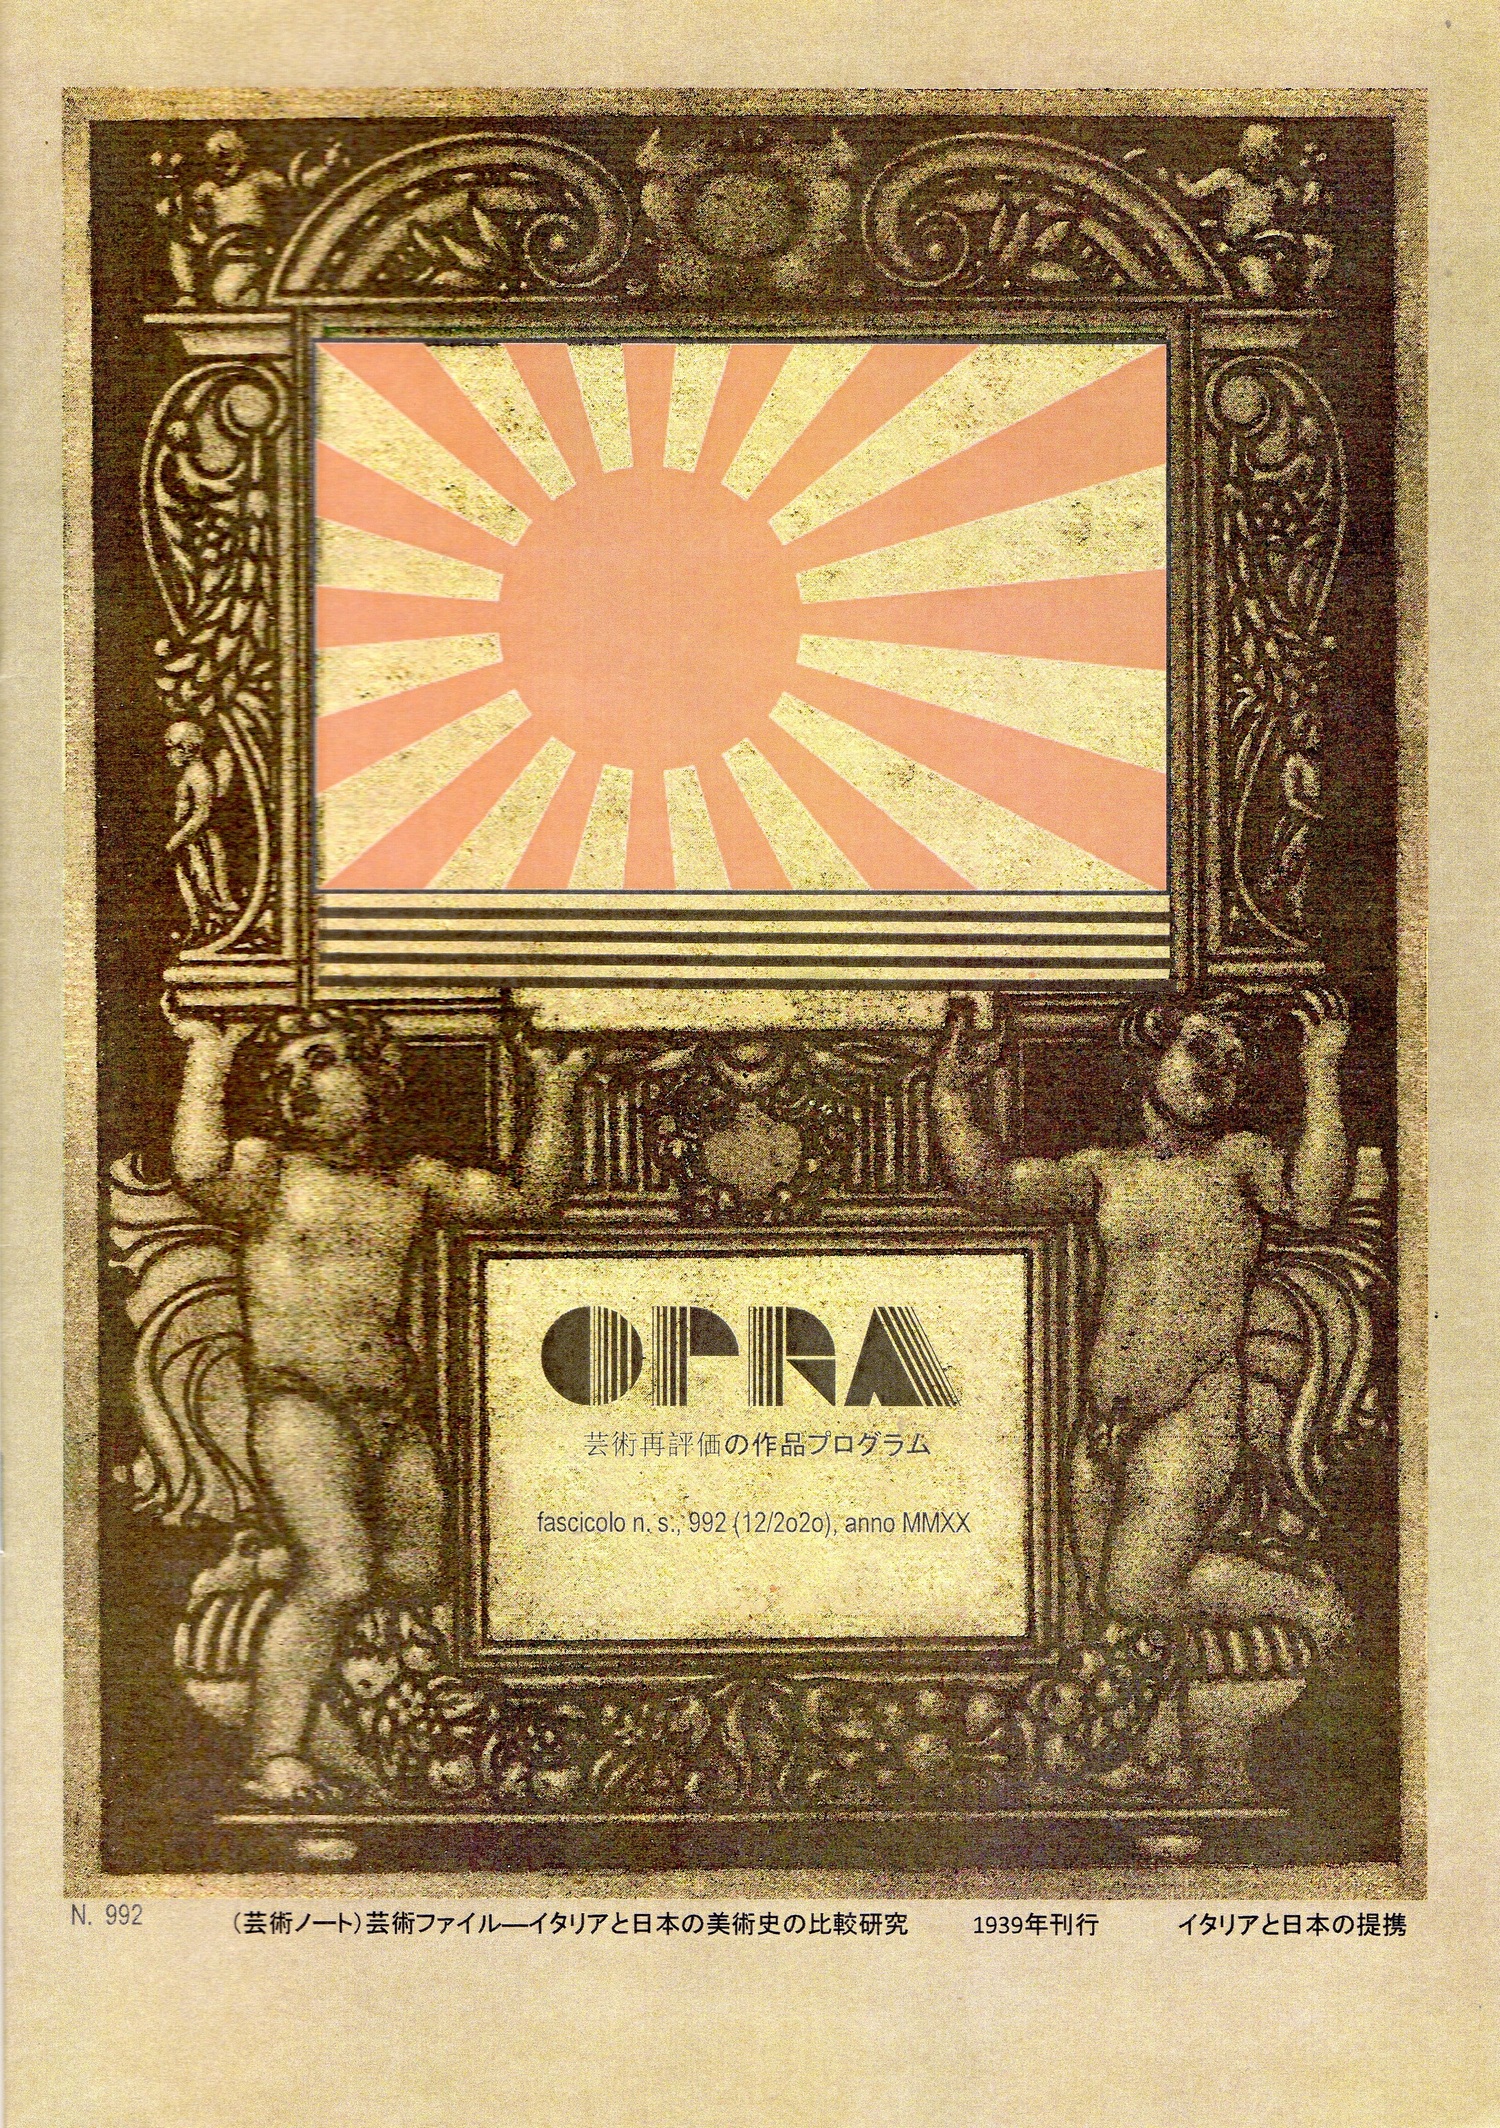 OPRA - Opera Programmatica di Riqualificazione Artistica